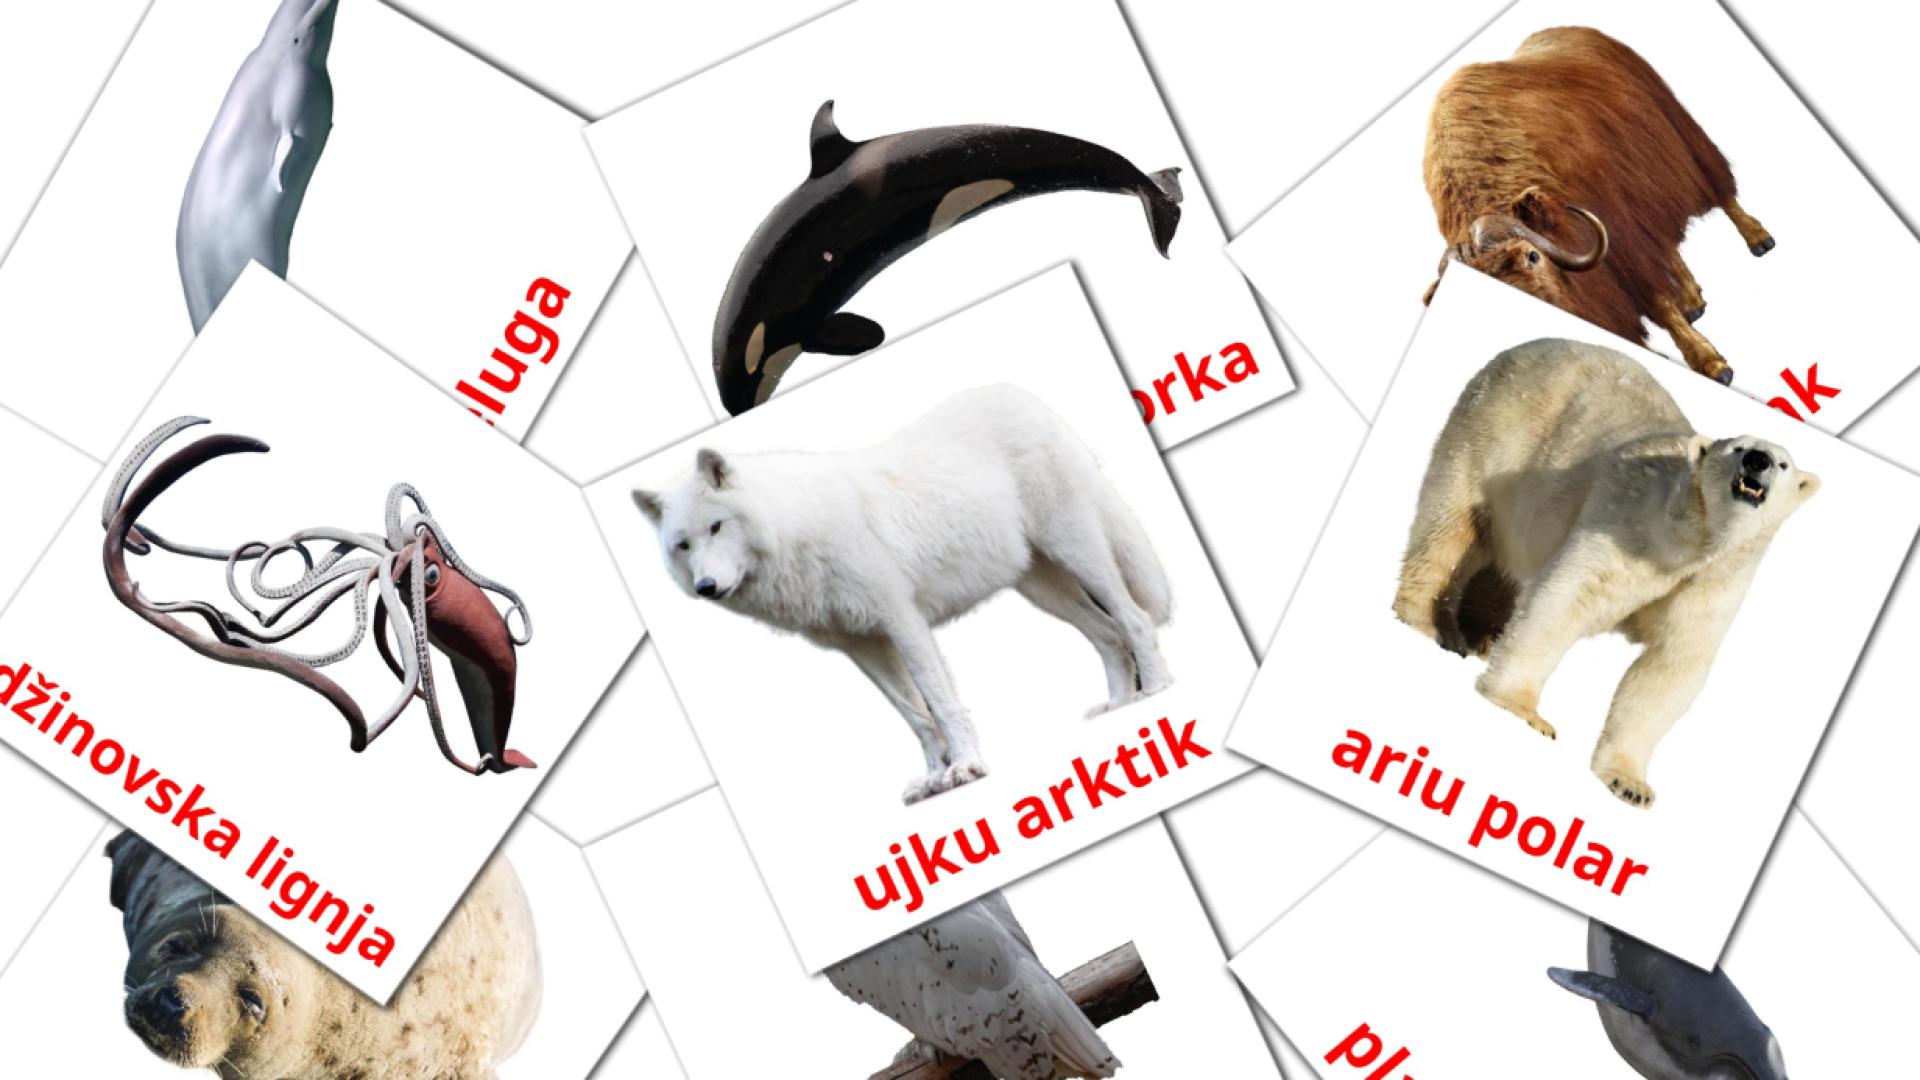 Les Animaux de l'Arctique - cartes de vocabulaire albanais